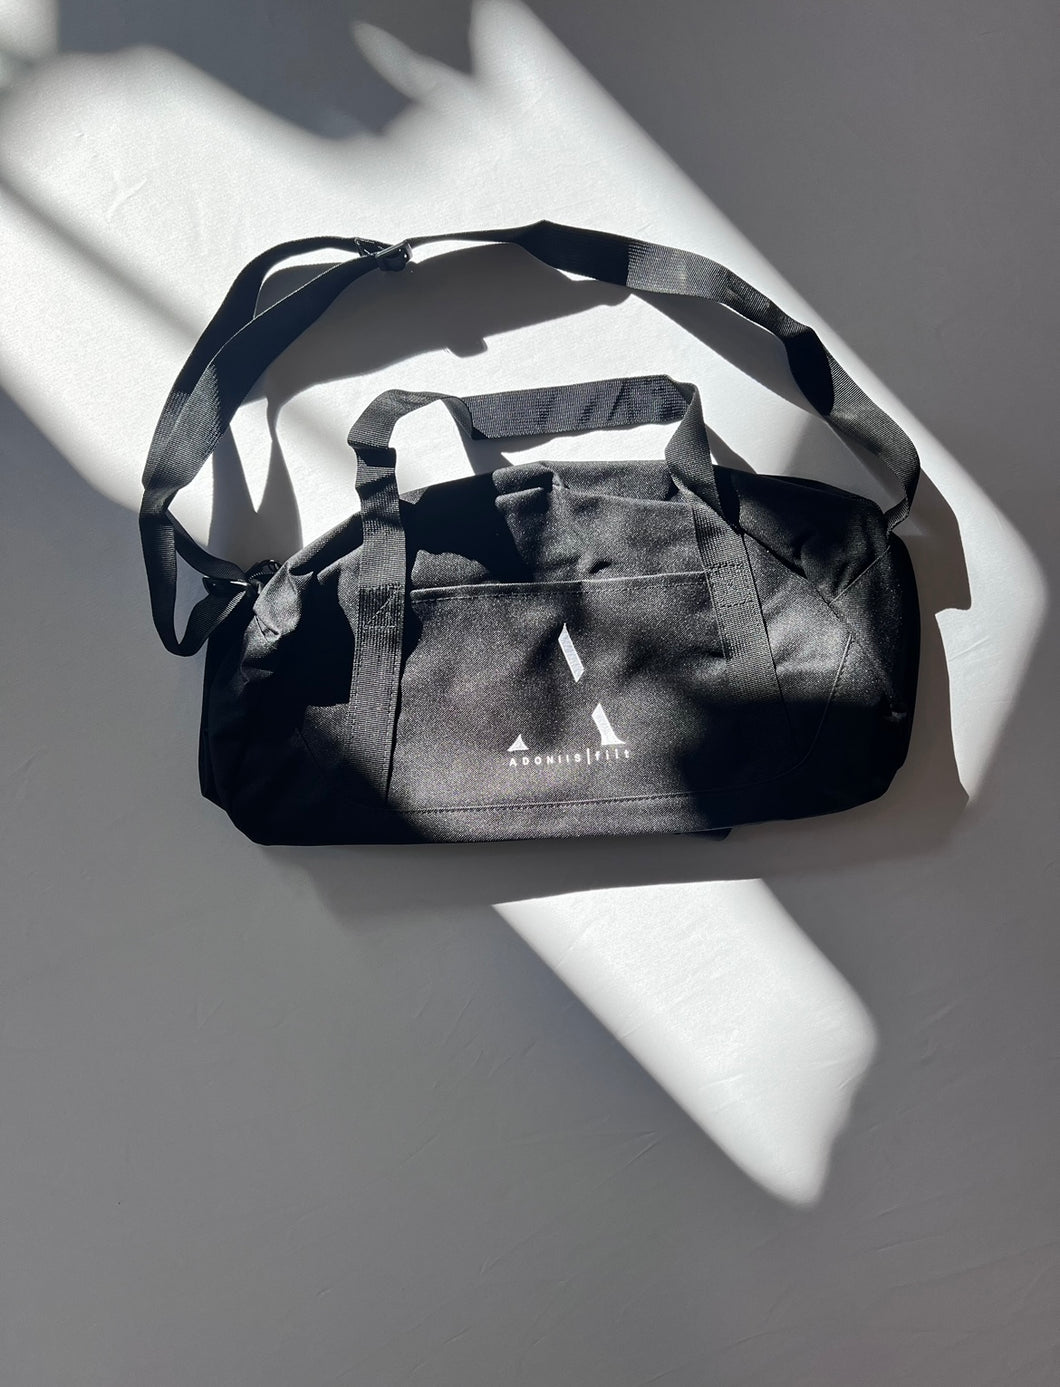 The Commoner Duffel Bag